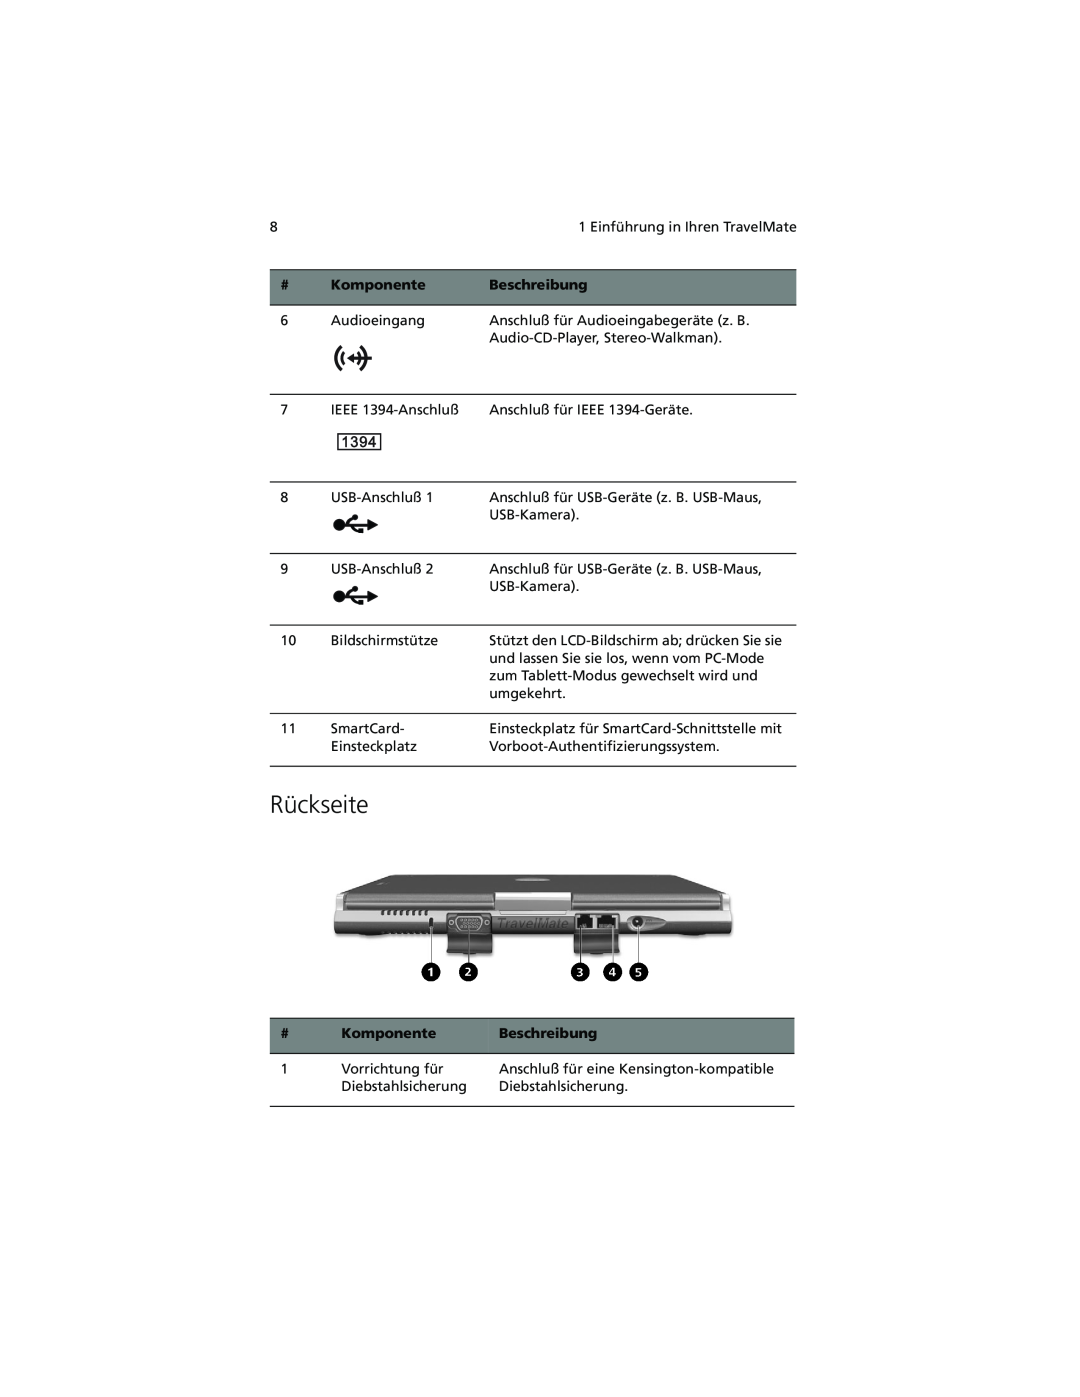 Acer C100-Series manual Rückseite, Komponente, Beschreibung 